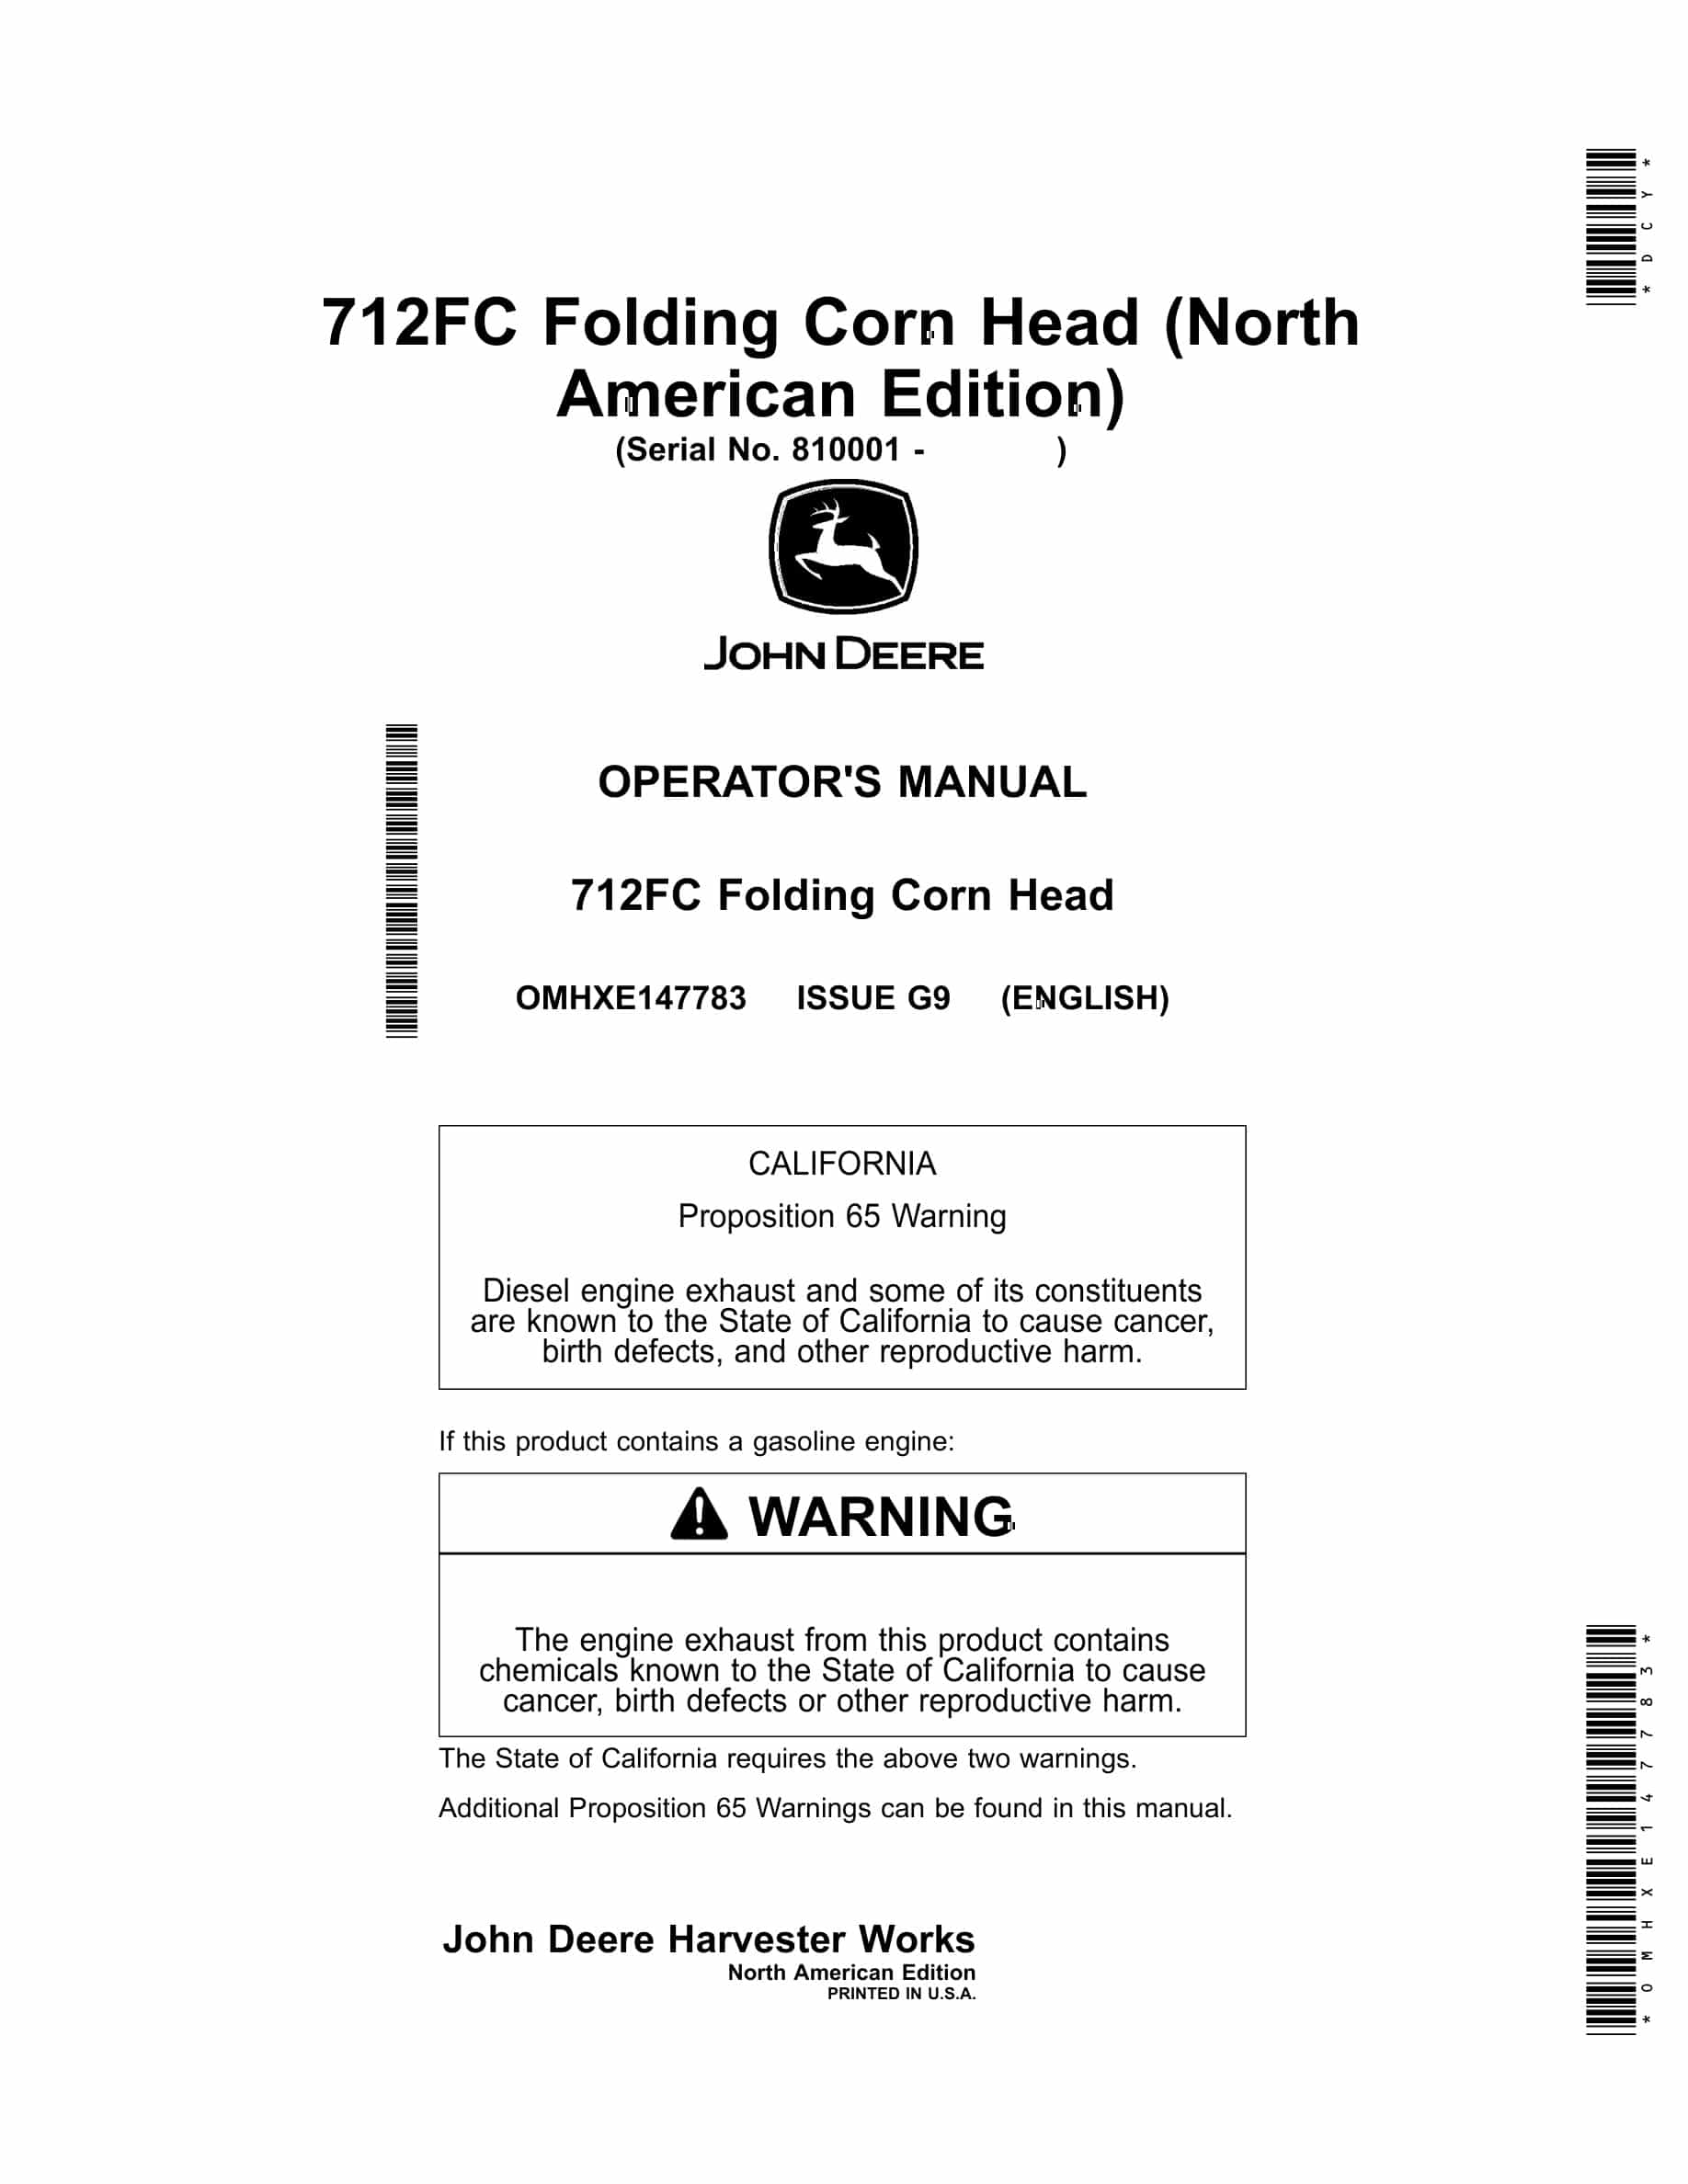 John Deere 712FC Folding Corn Head Operator Manual OMHXE147783-1